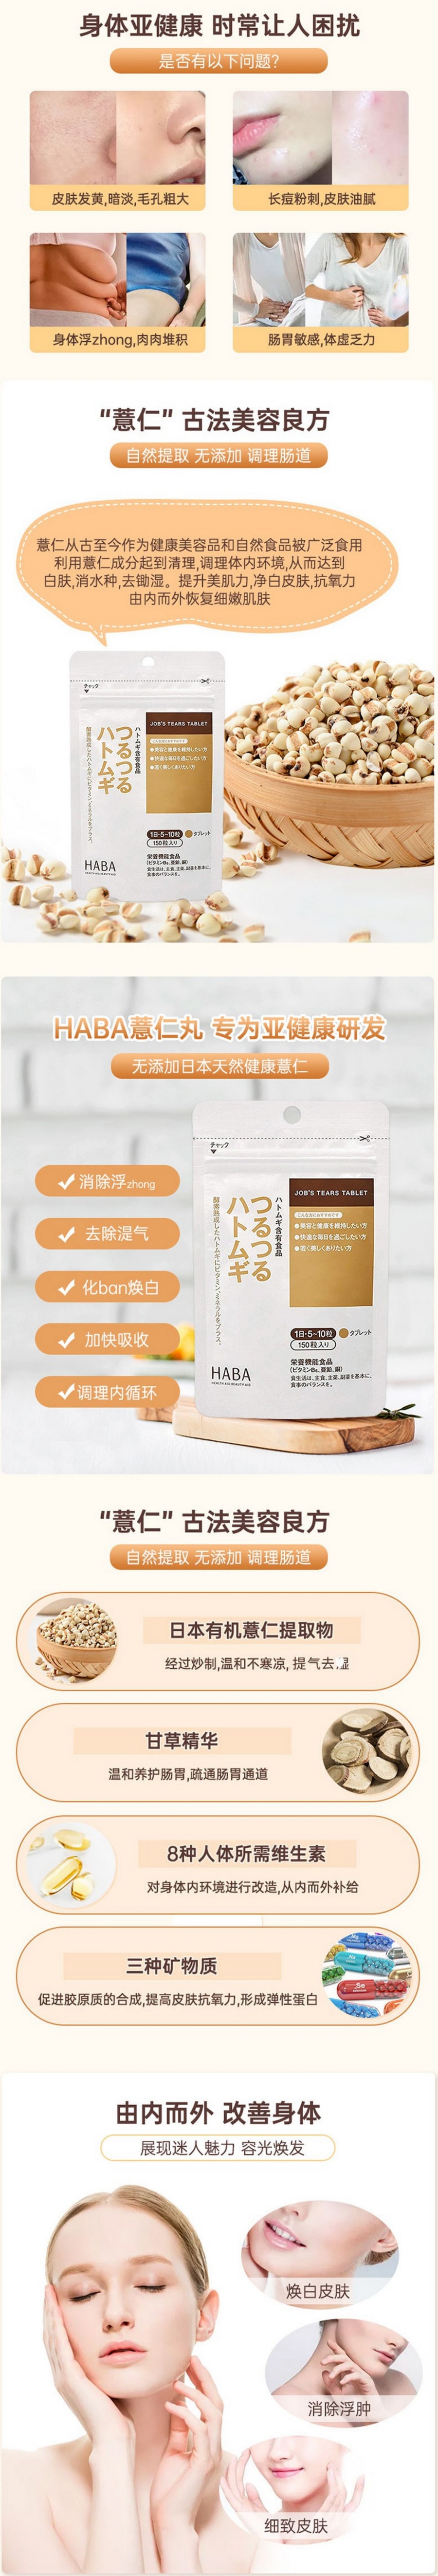 【日本直邮】HABA 薏仁丸 无添加酵素熟成薏仁薏米精华美肌片 450粒入